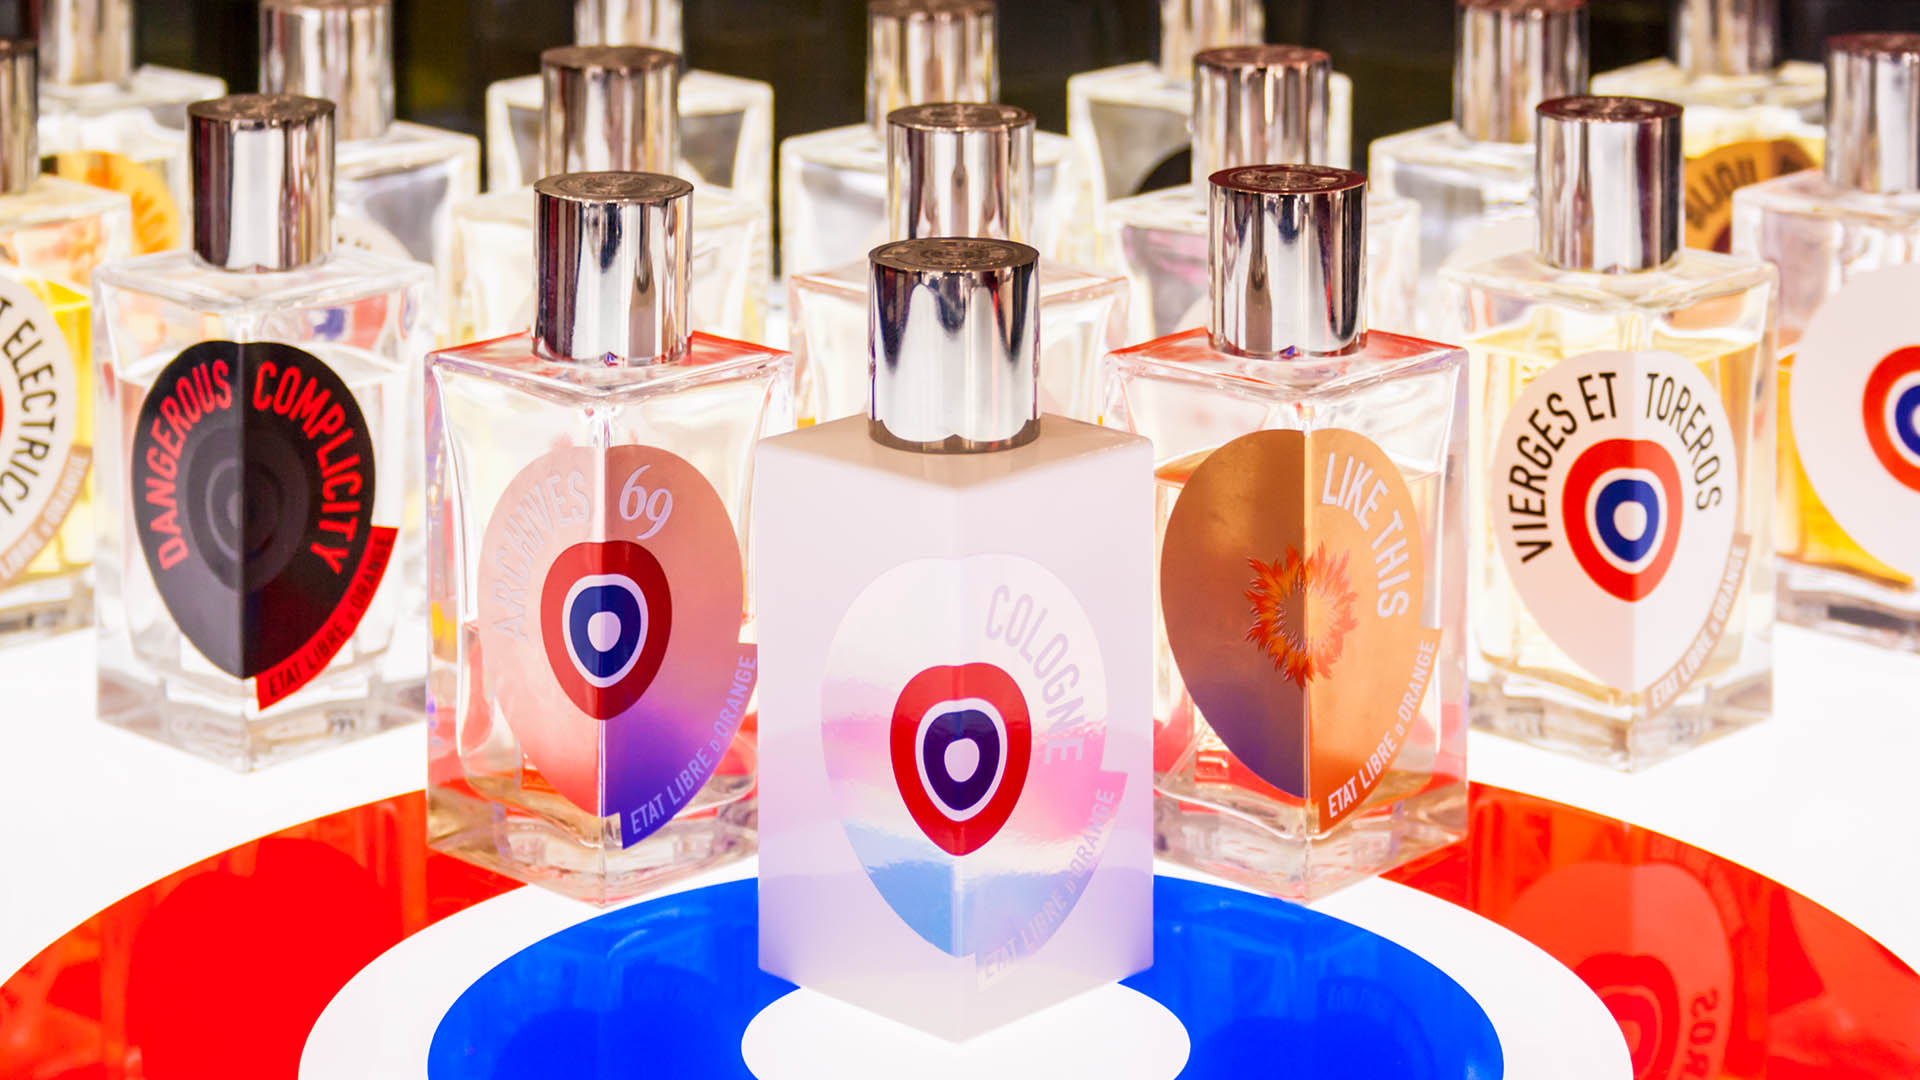 Une marque française lance un parfum qui sent... le sexe !